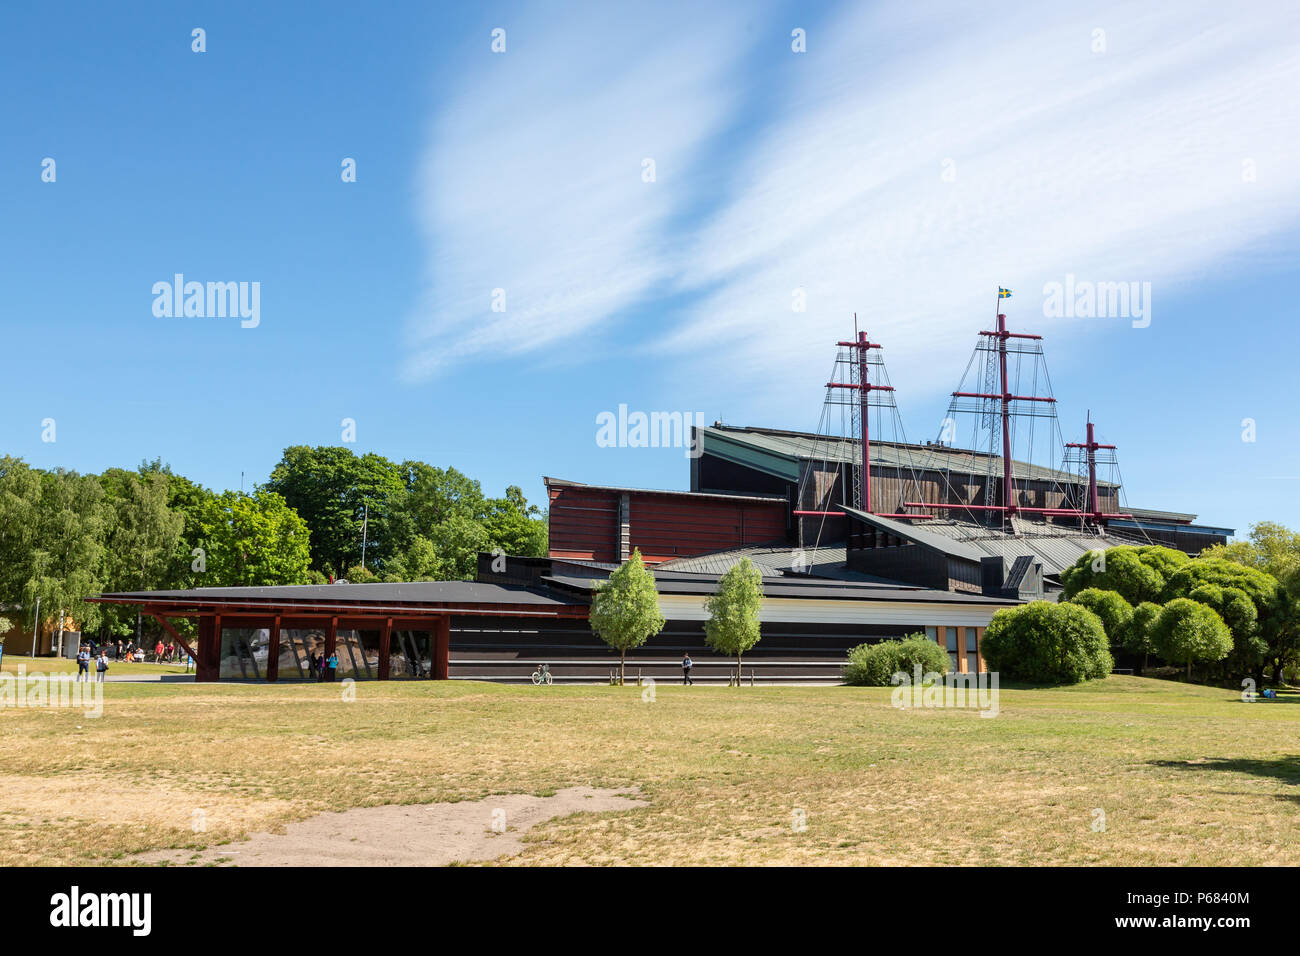 Vasa Museum, Djurgarden, Stockholm, Sweden Stock Photo